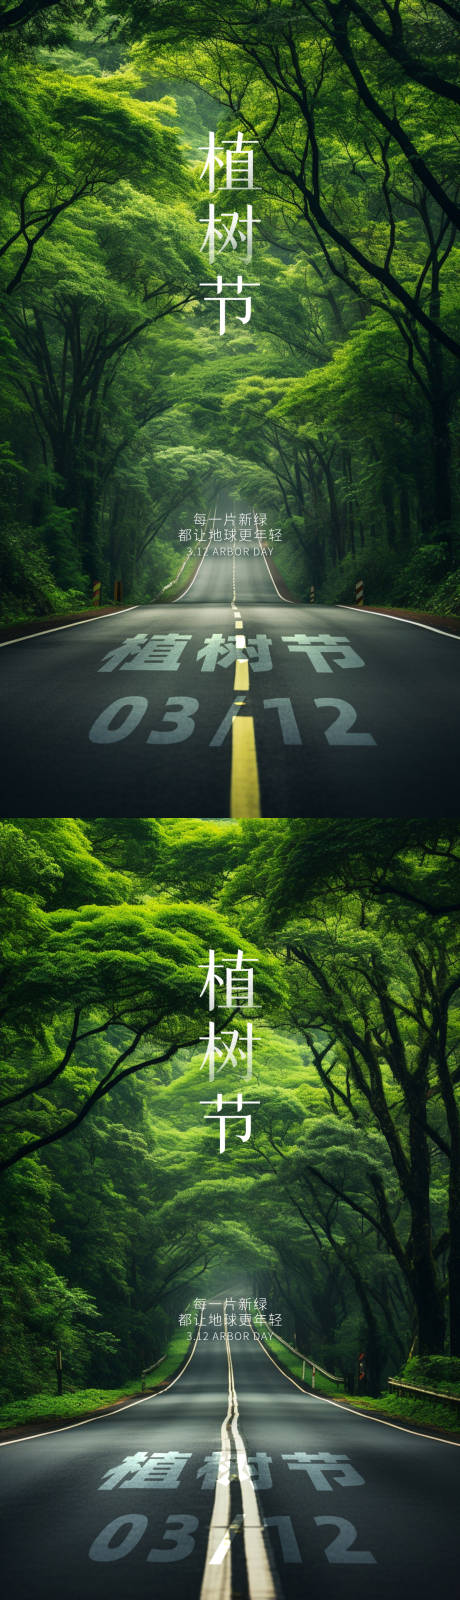 植树节马路系列海报